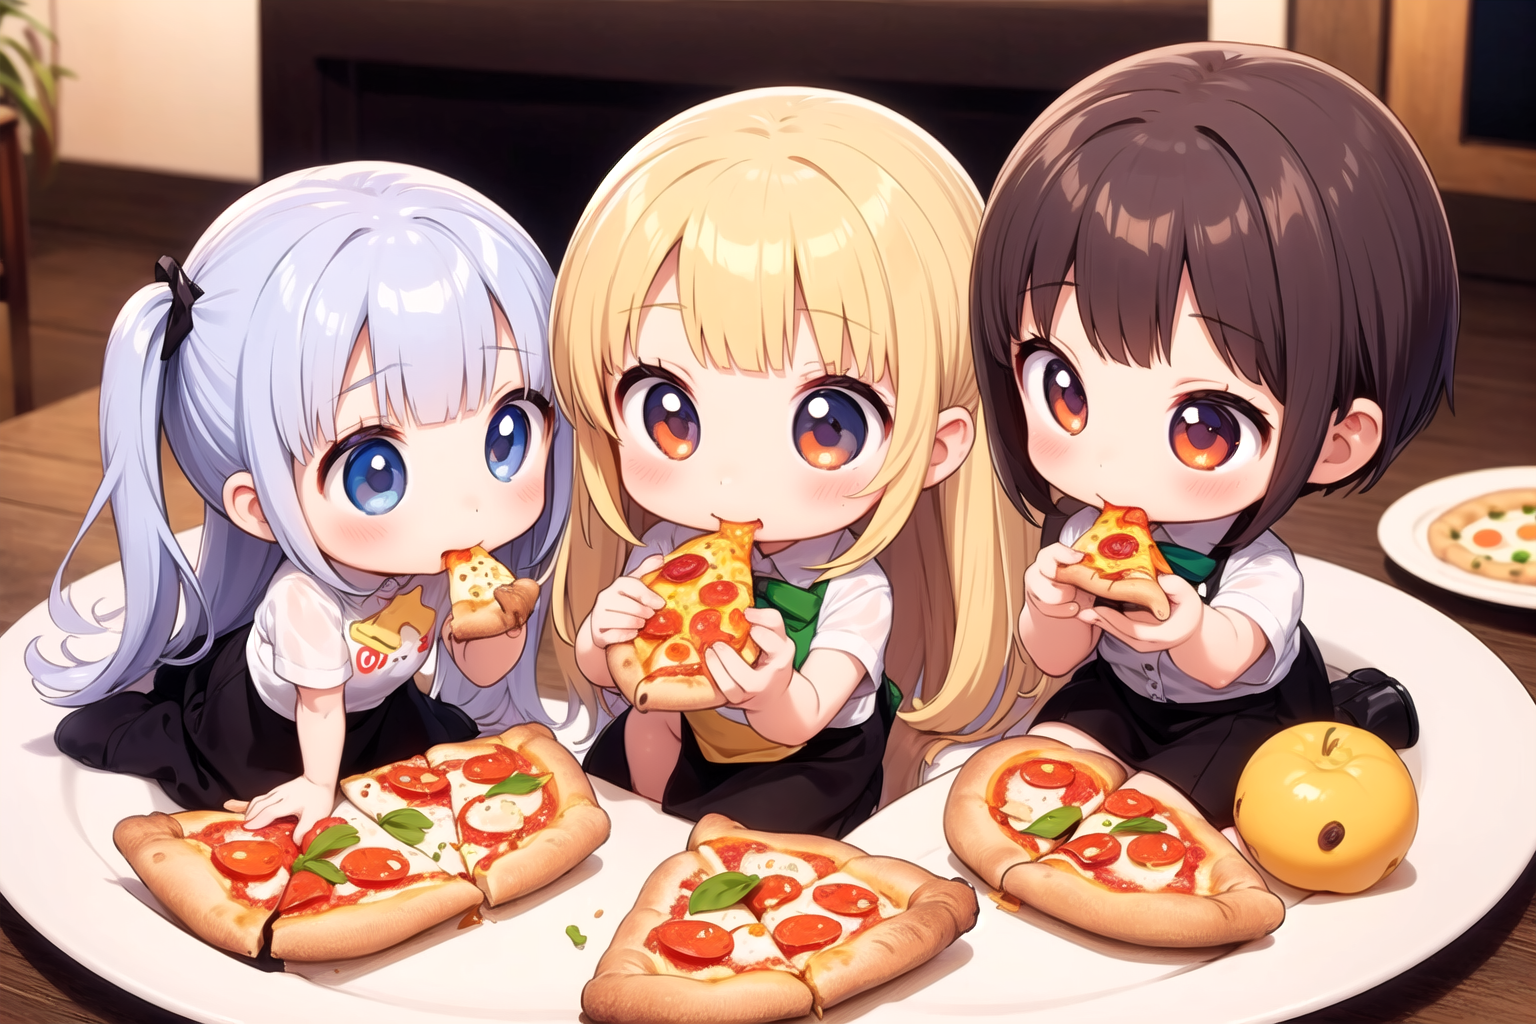 6+girls,(chibi:1.2),eating,pizza,holding pizza,full body,